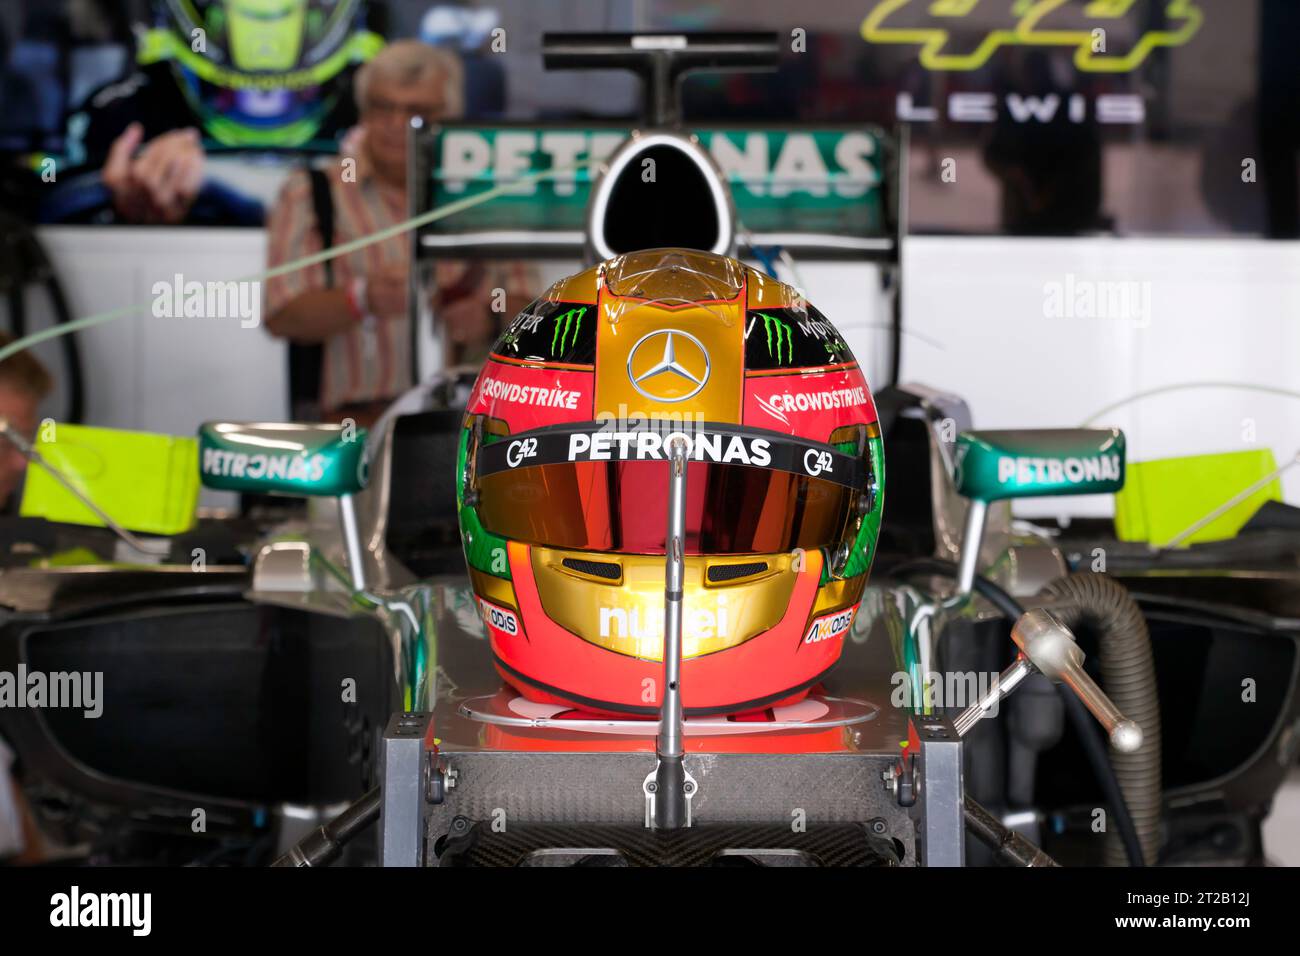 Nahaufnahme von Lewis Hamiltons Rennhelm, der auf seinem Mercedes Petronas Formel-1-Wagen sitzt und in einer internationalen Boxengarage ausgestellt ist. Stockfoto